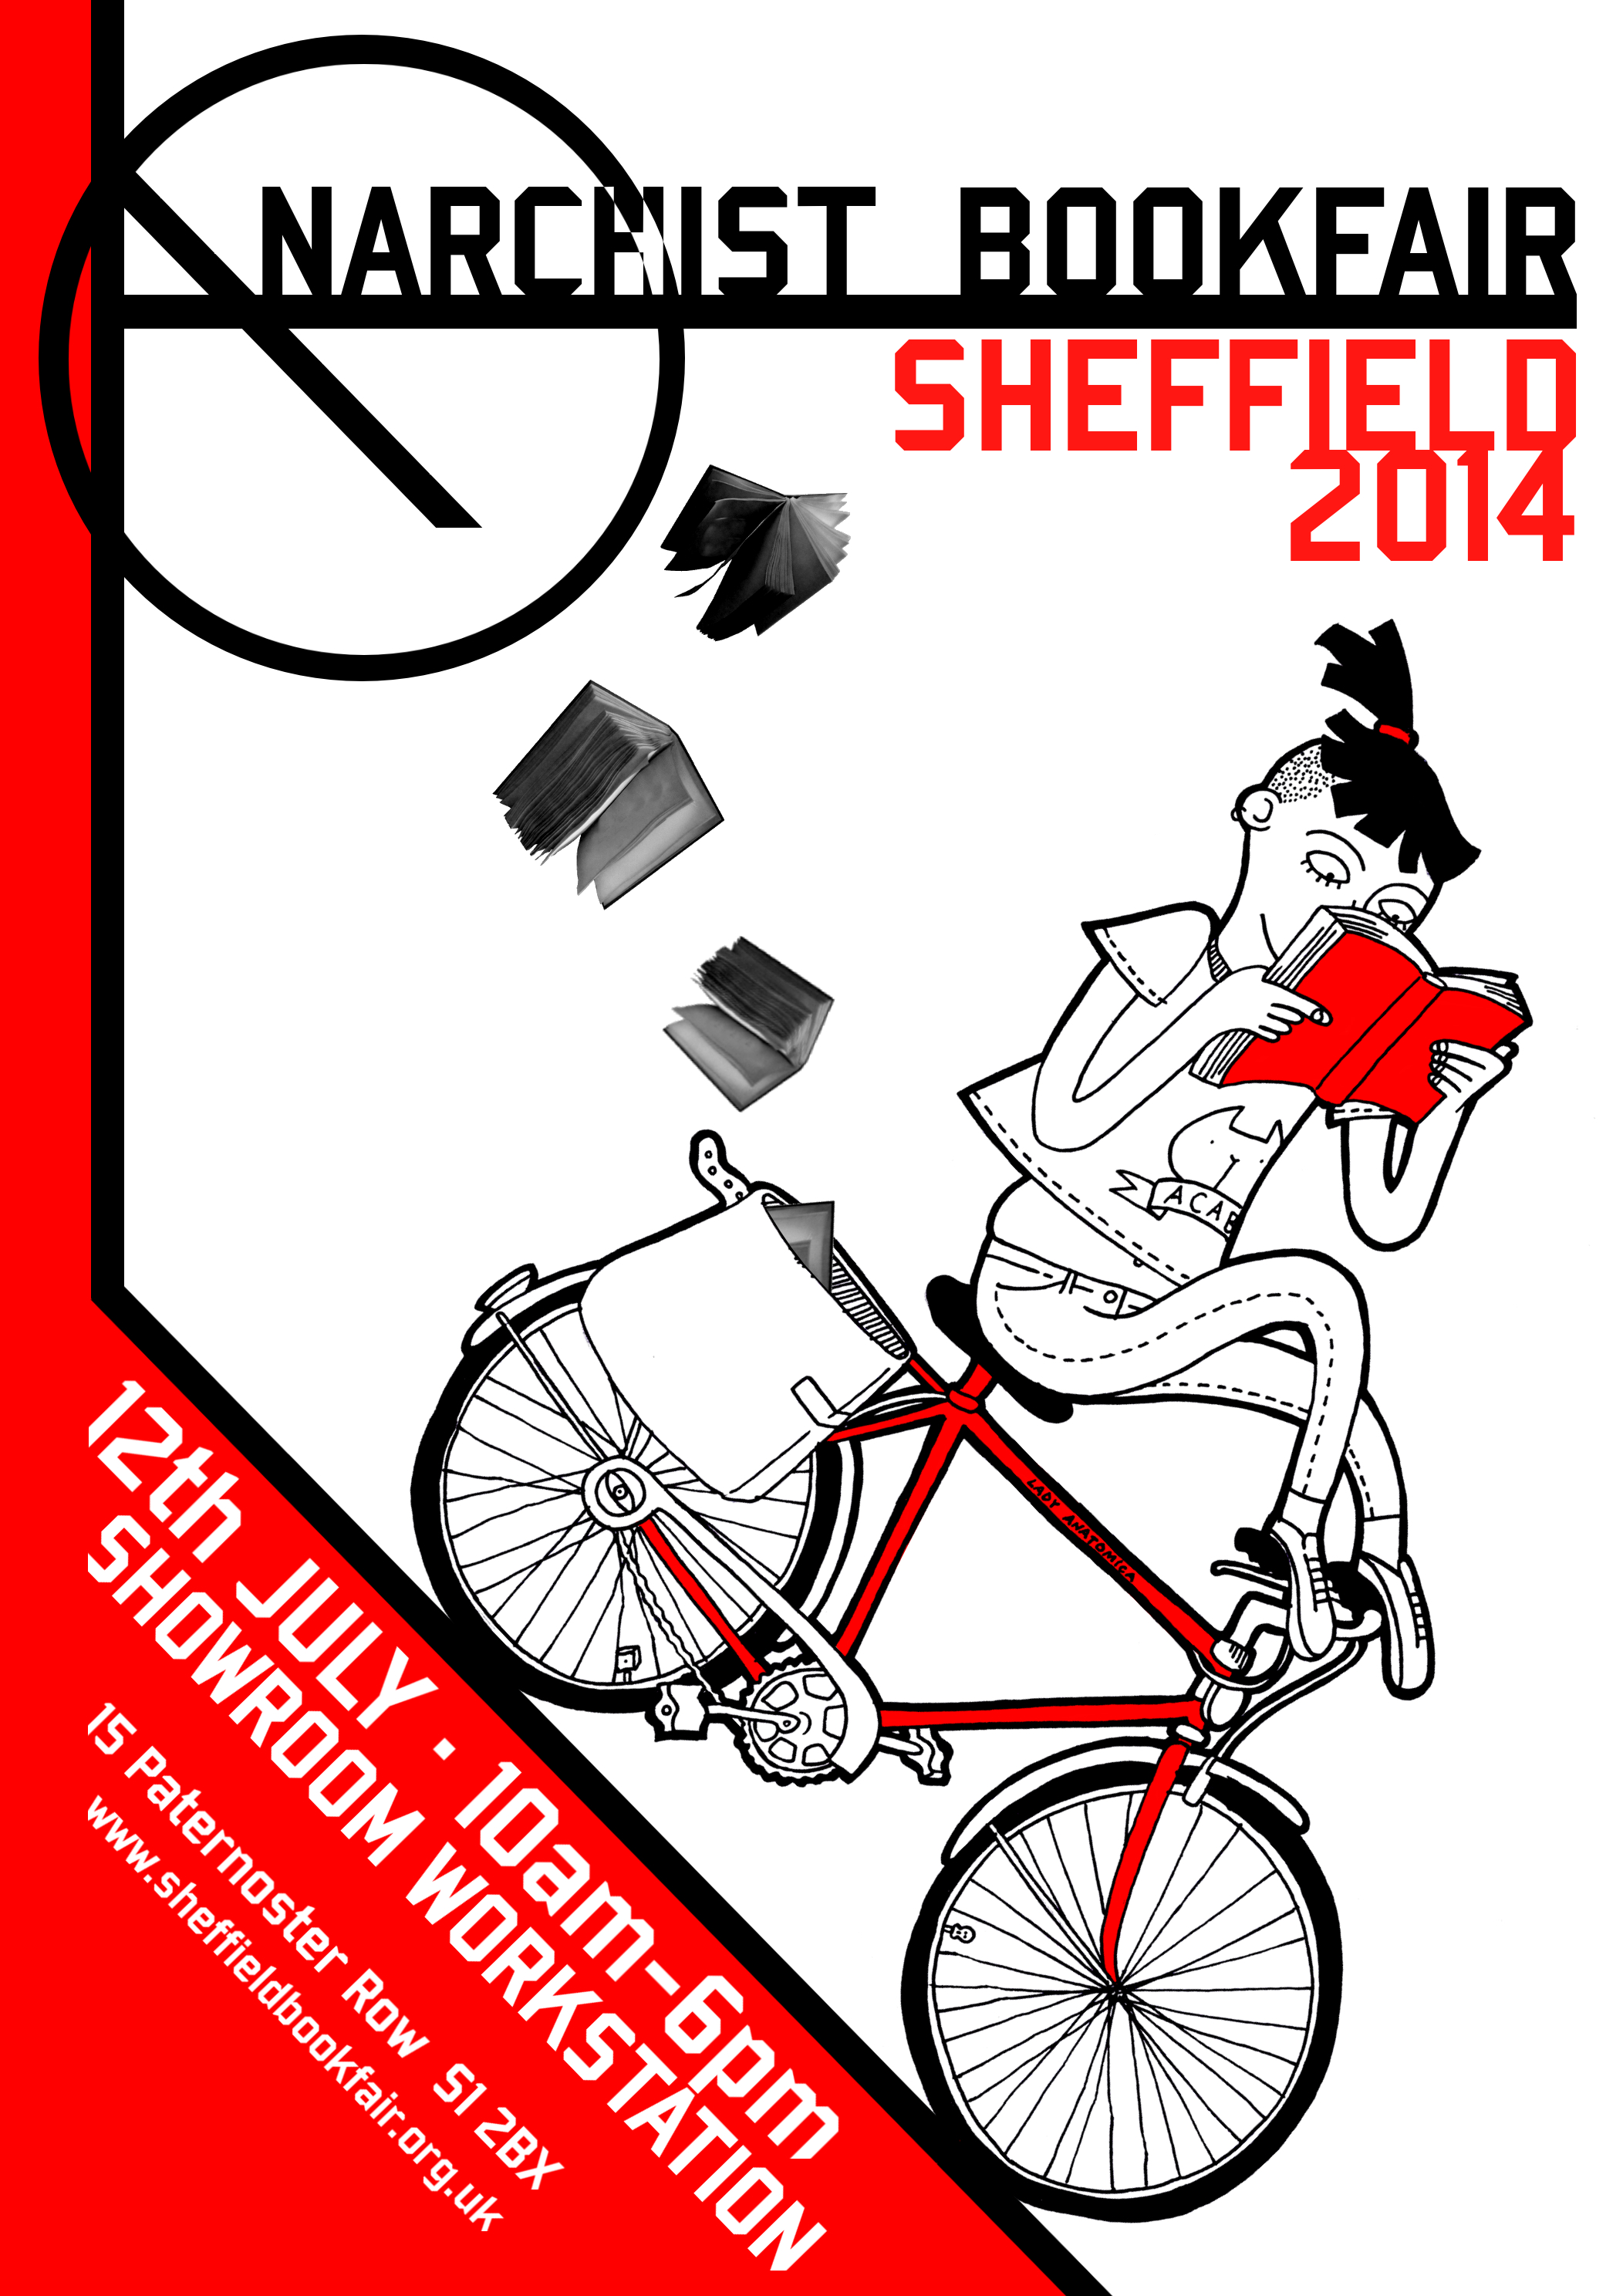 4th Annual Sheffield Anarchist Bookfair